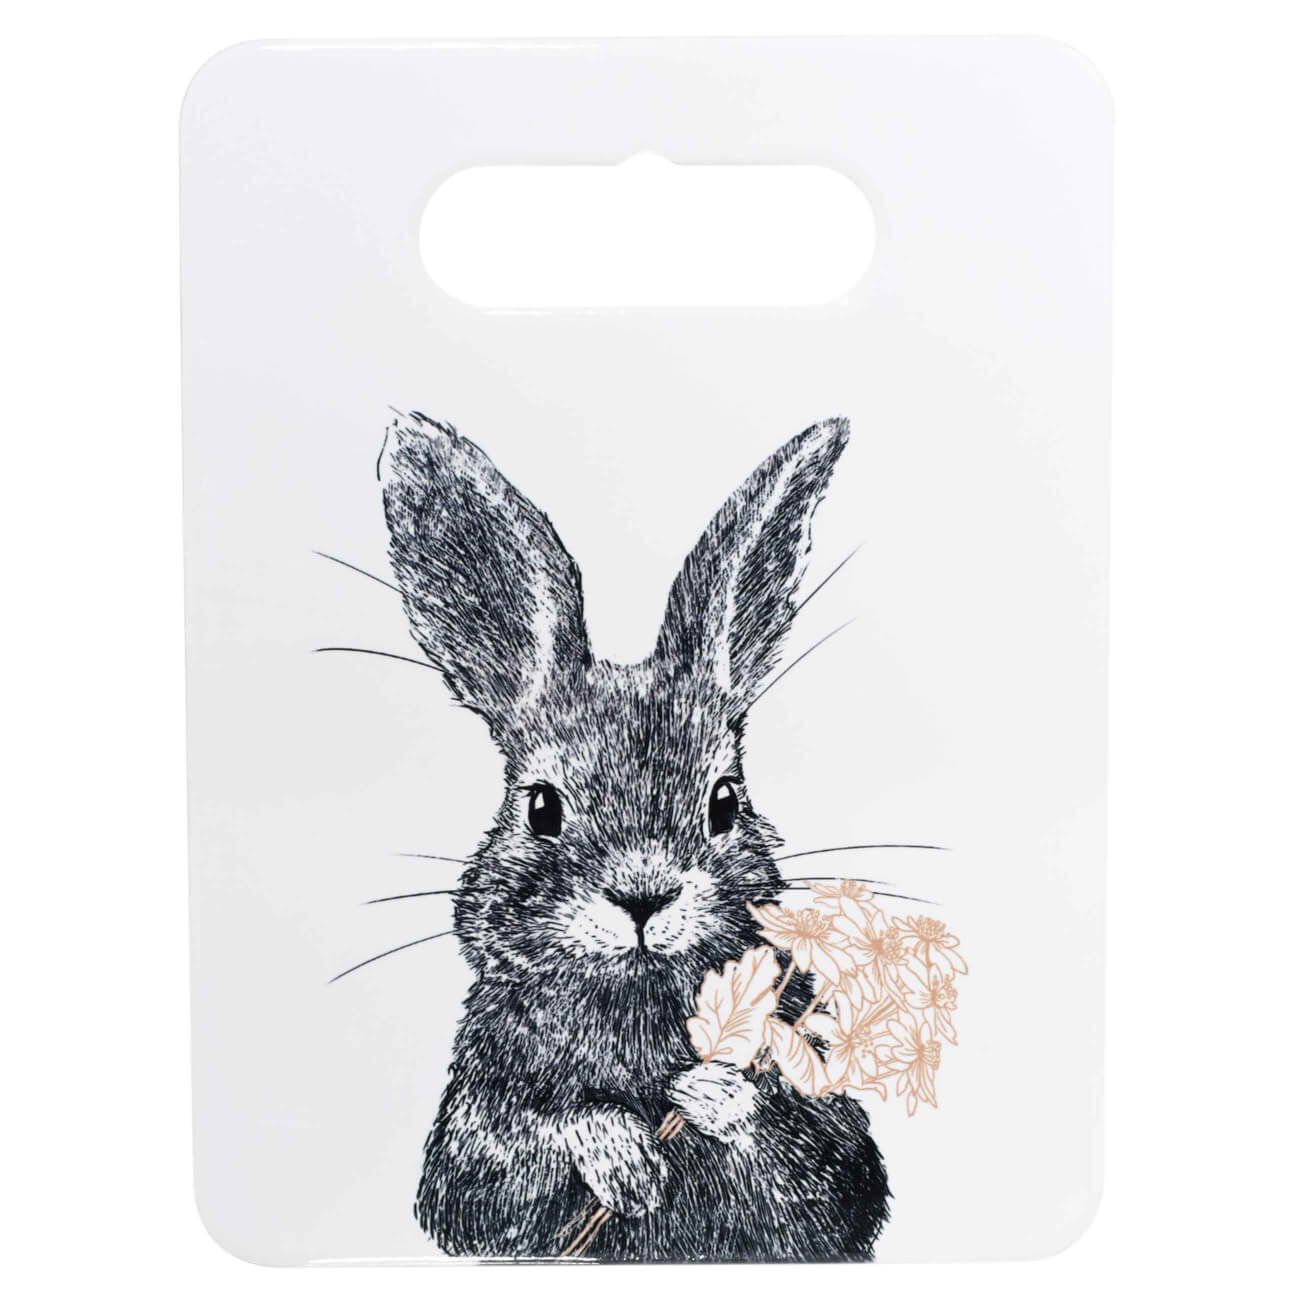 Подставка под горячее, 18x24 см, керамика/пробка, прямоугольная, белая, Кролик, Easter blooming подставка для телефона